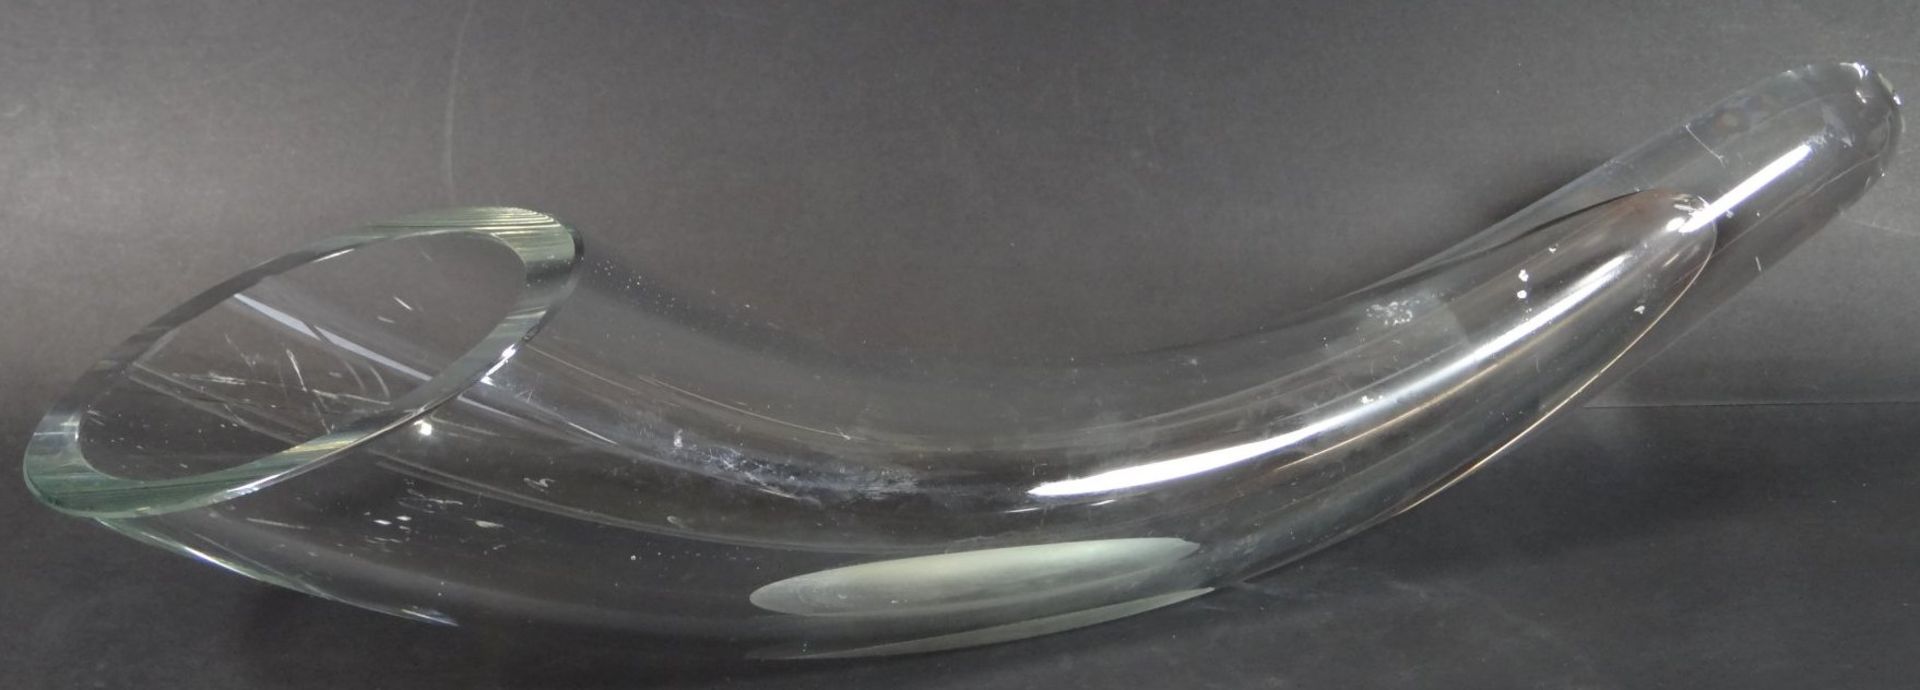 Kristall-Trinkhorn, Gebrauchsspuren, L-40 cm